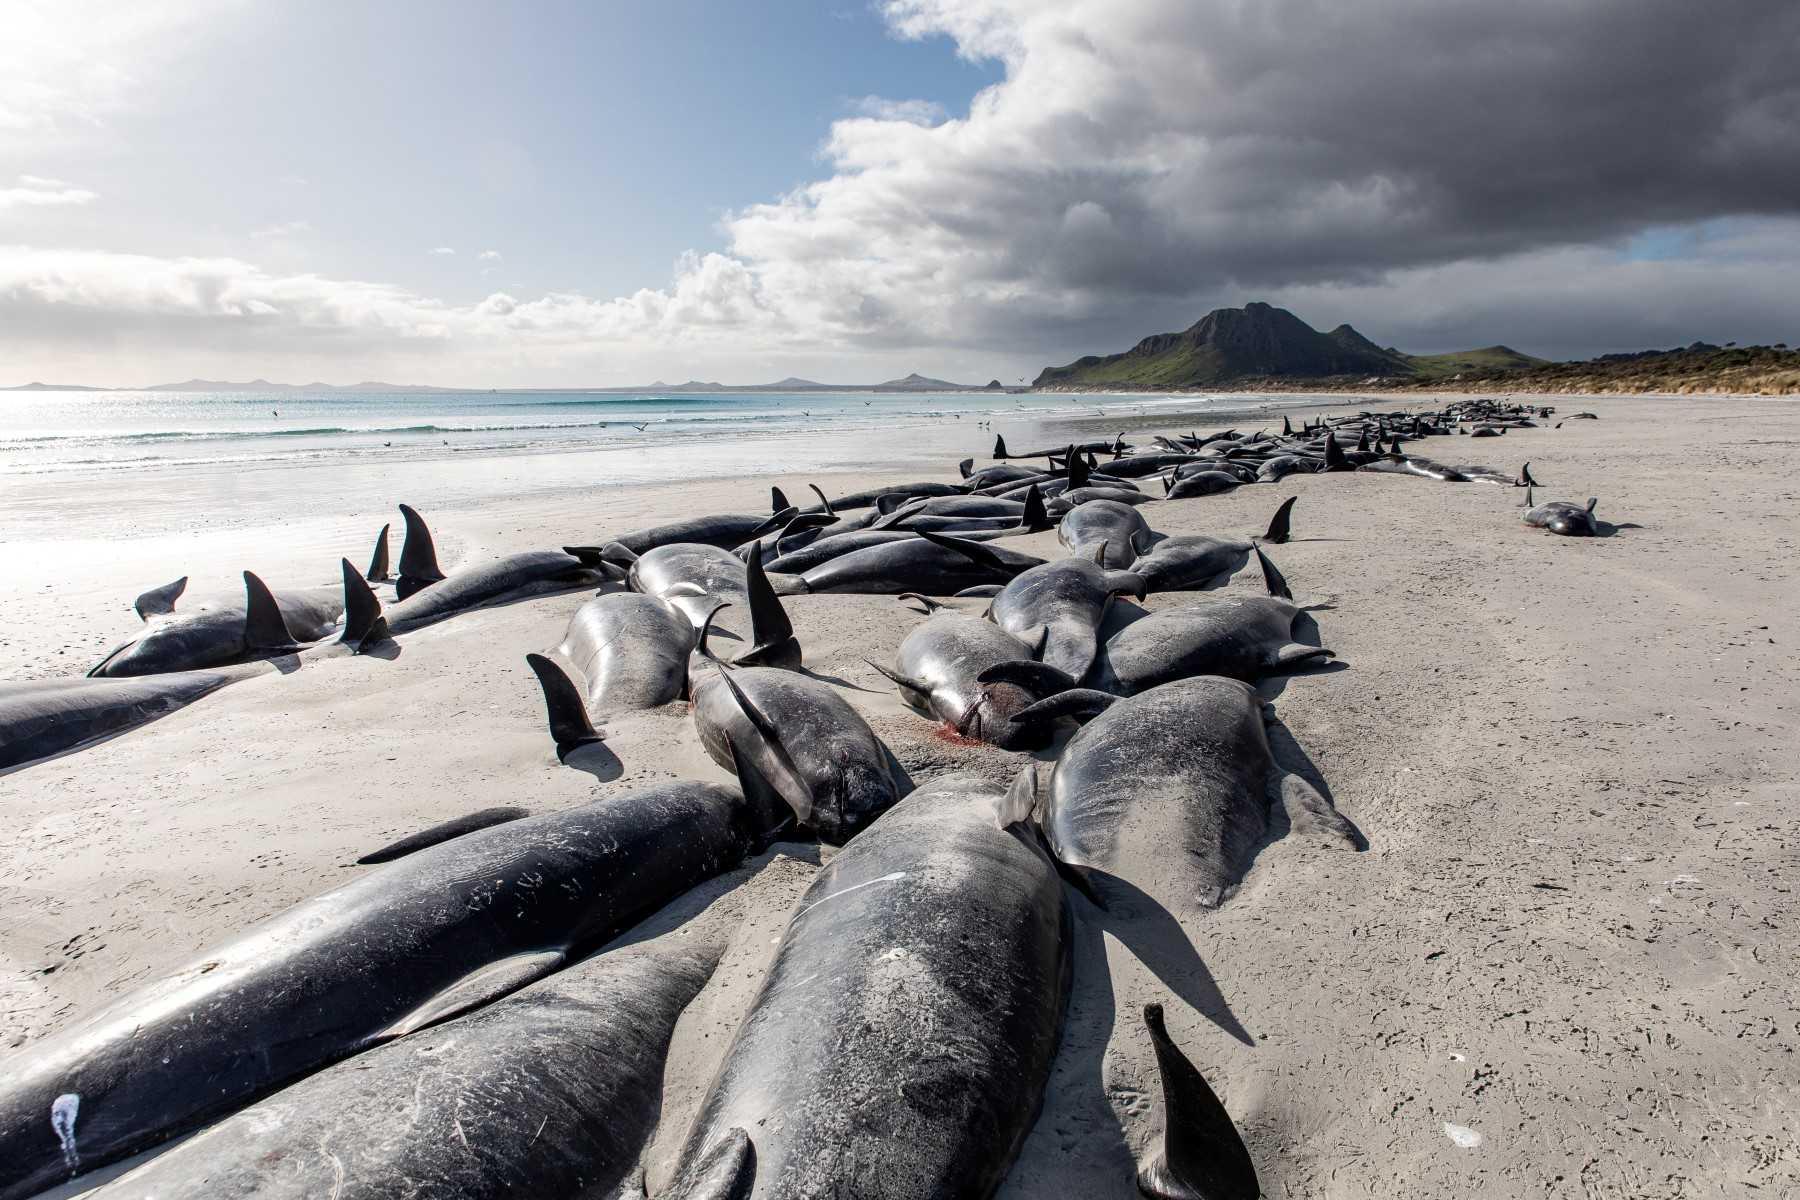 Gambar edaran yang diambil pada 8 Oktober 2022 dan diterima pada 12 Oktober menunjukkan bangkai paus yang terdampar, di pantai barat Pulau Chatham di New Zealand. Gambar: AFP